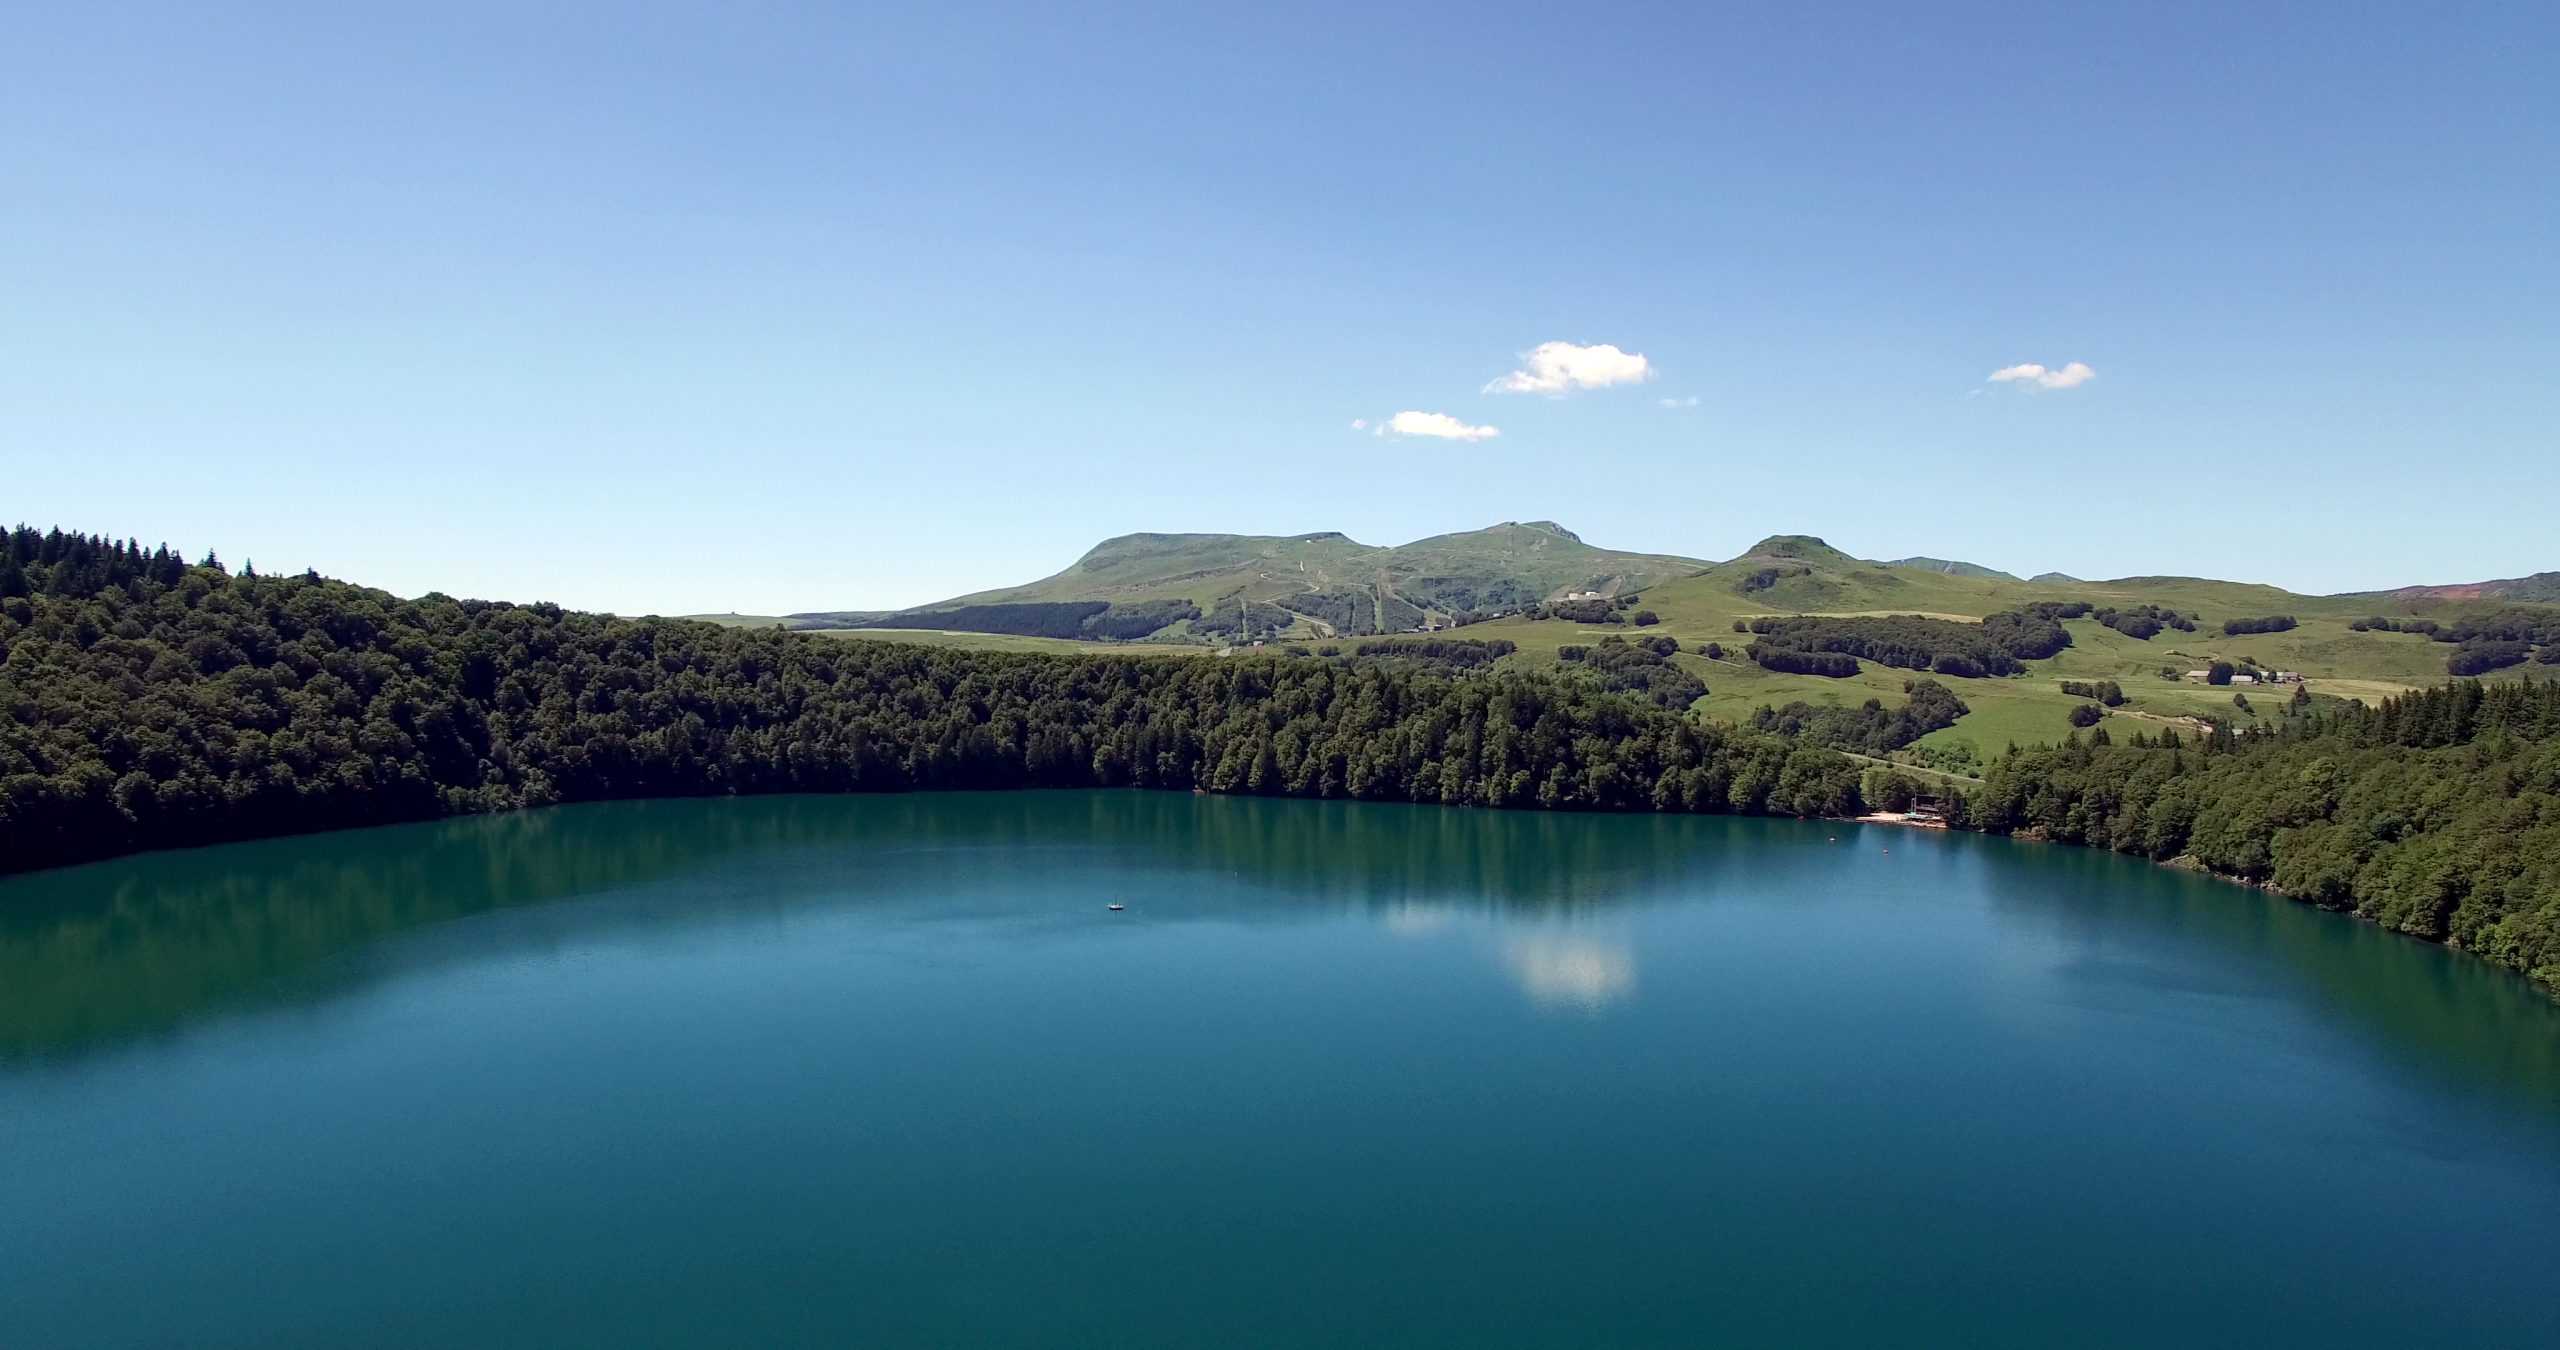 Le Lac Pavin : Un des plus bels exemples de lac de cratère en Auvergne